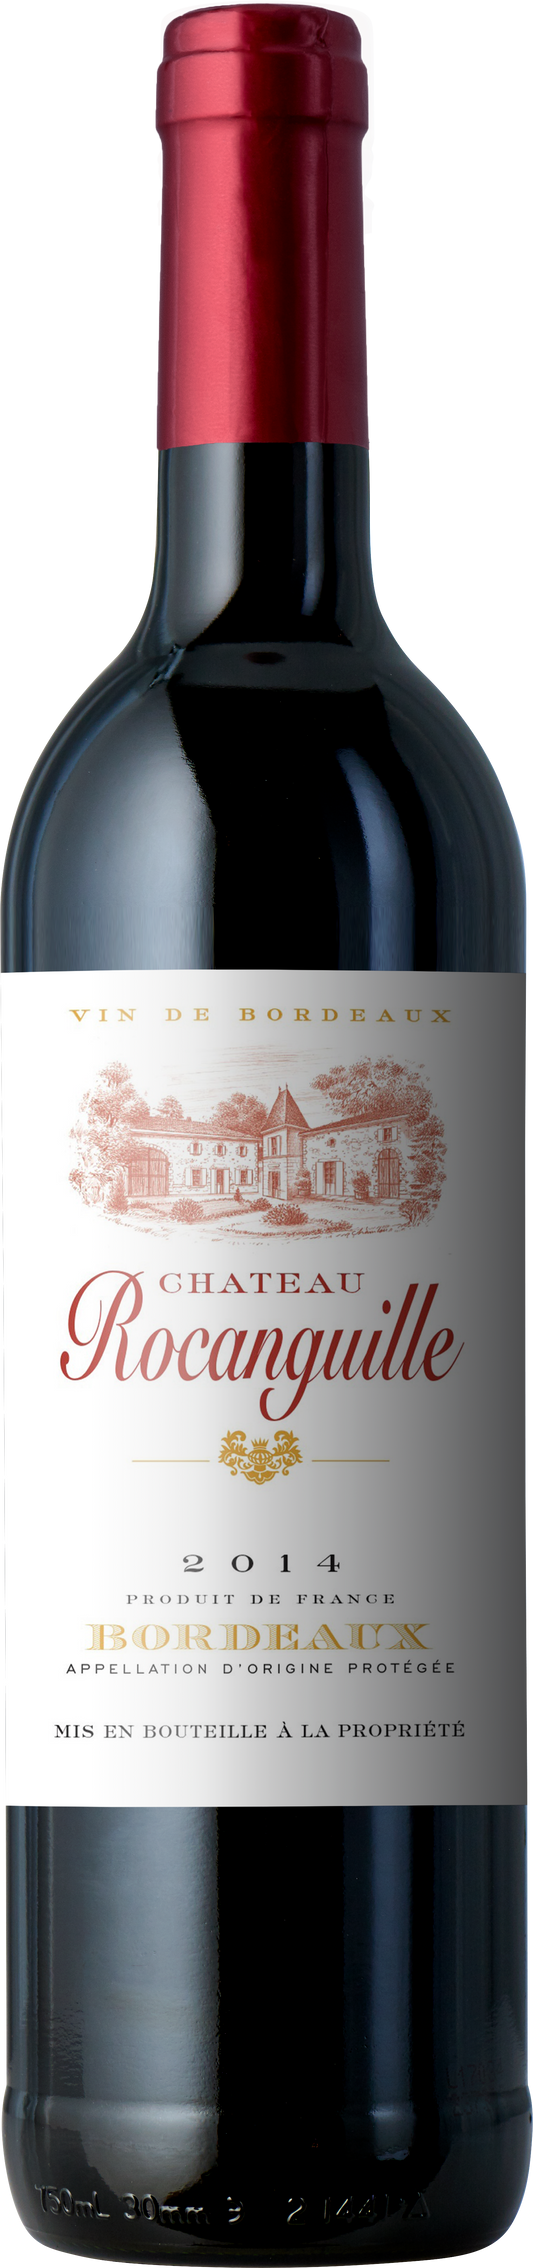 Chateau Rocanguille Bordeaux 2020